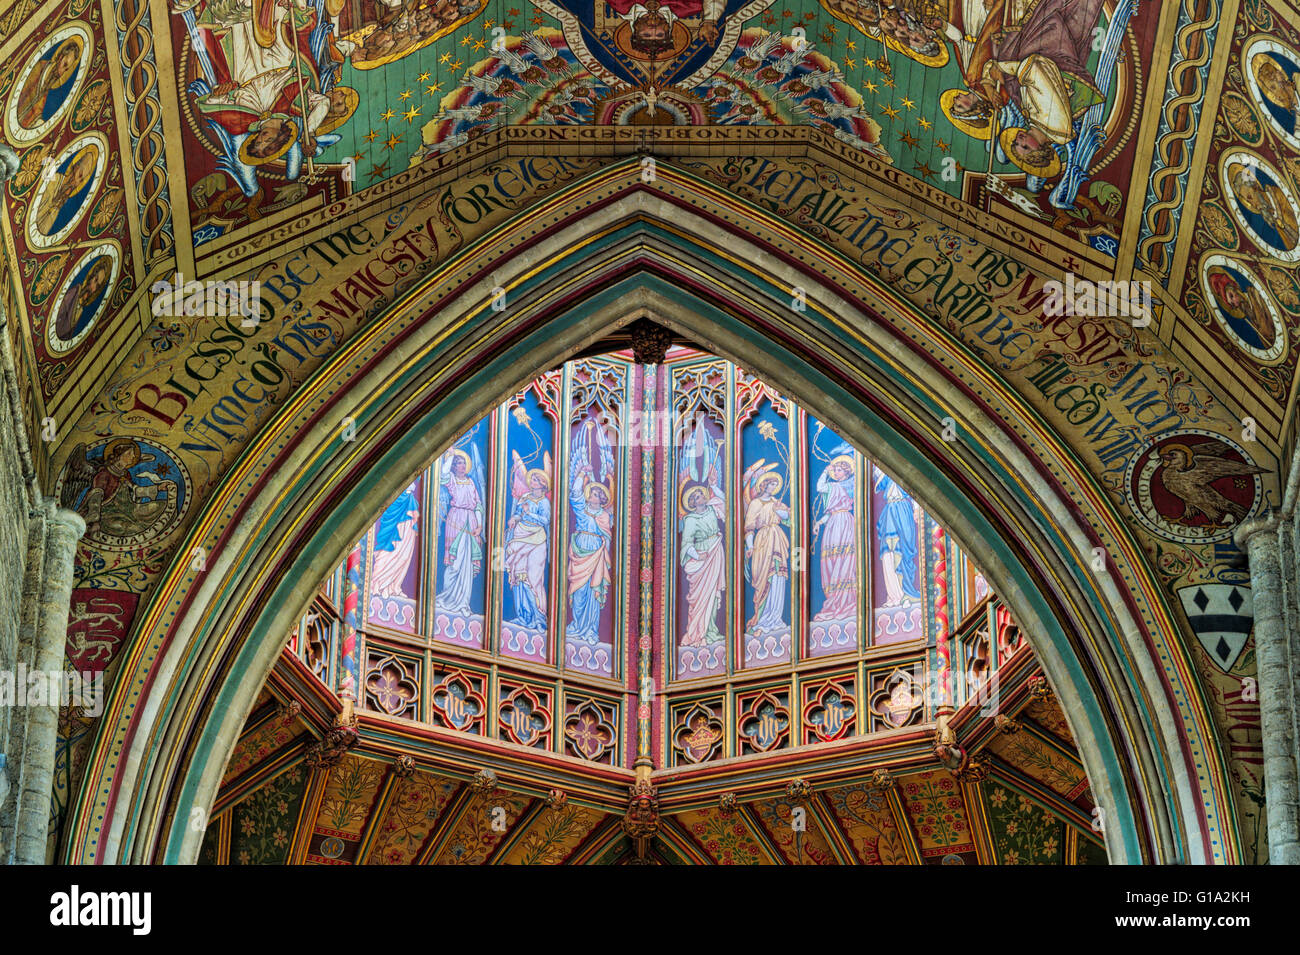 Cathédrale d'Ely tour octogonale peinte au plafond. Ely, Cambridgeshire, Angleterre. HDR Banque D'Images